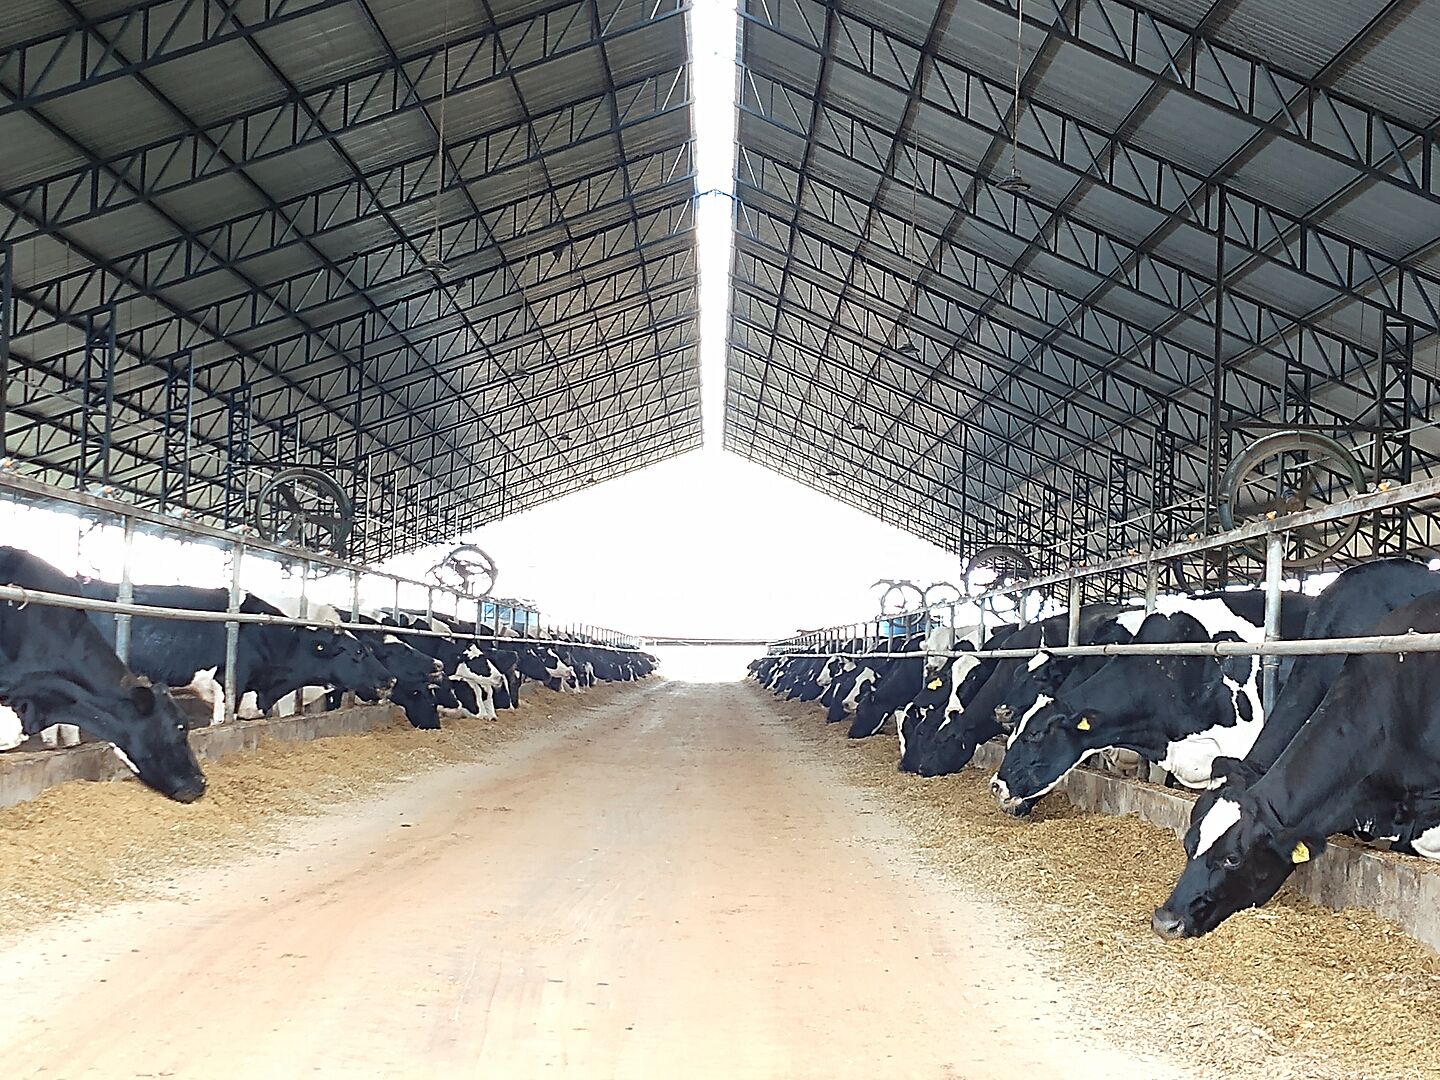 Cows in Brazil